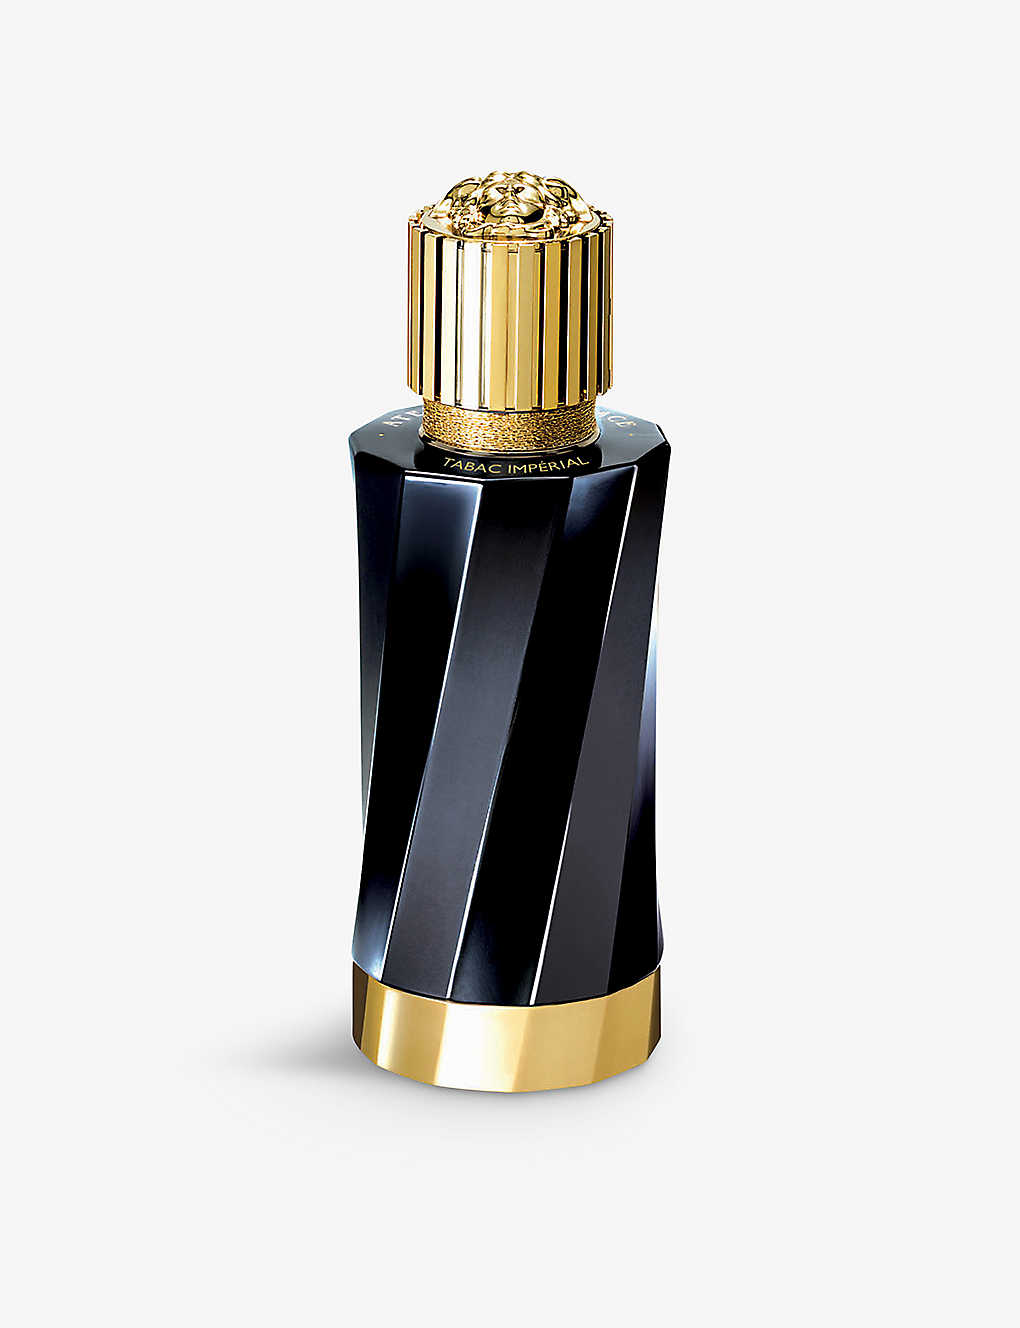 Versace Tabac Imperial Eau De Parfum